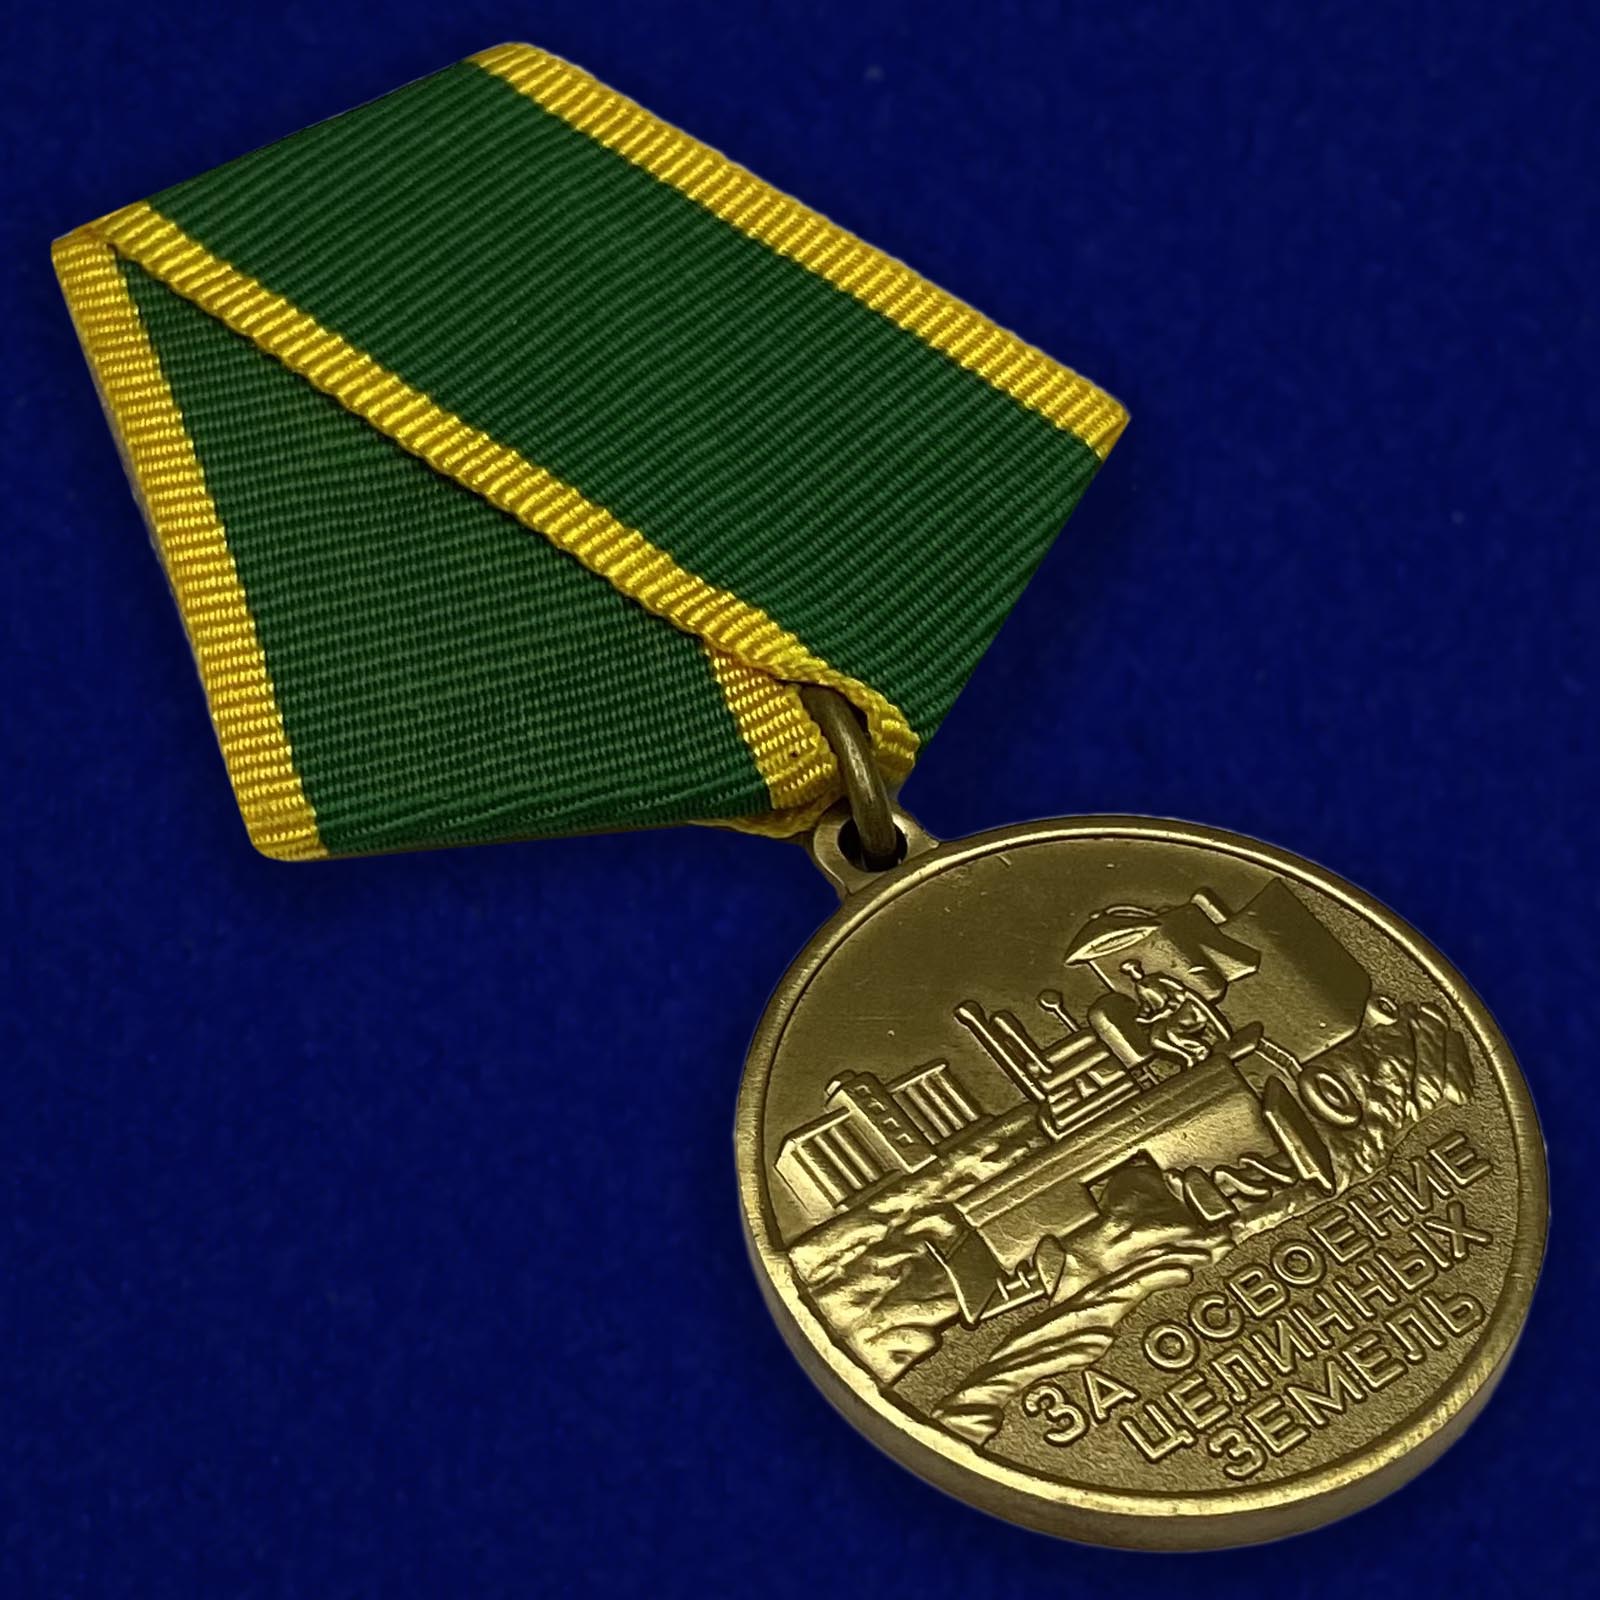 Медаль "За освоение целинных земель"